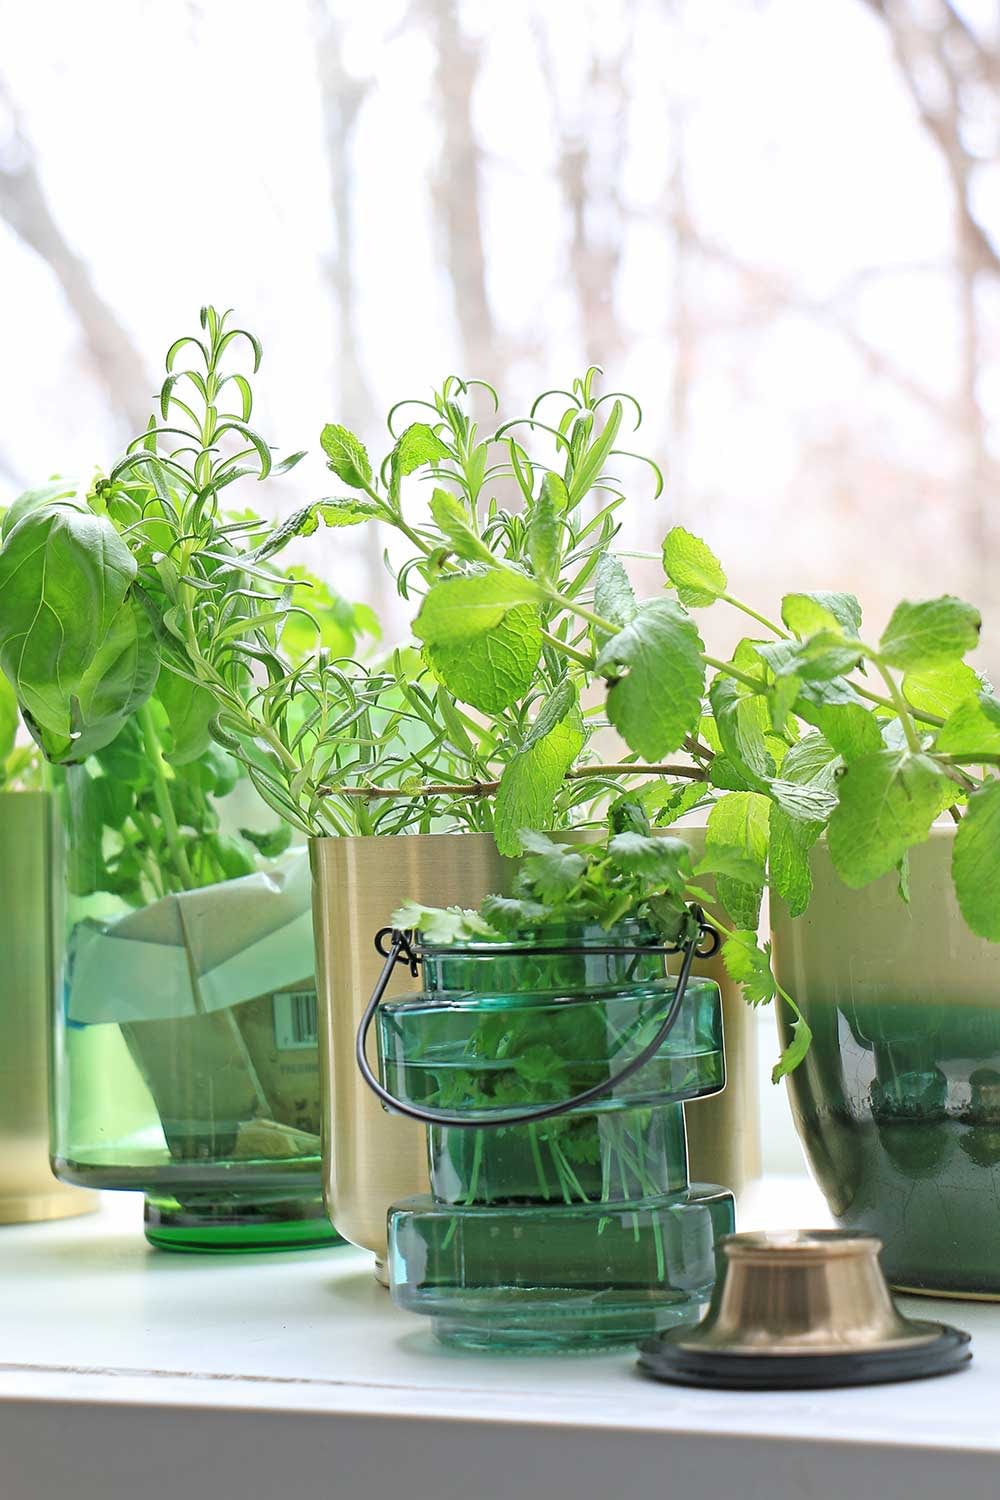 Growing Herbs & Microgreens Indoor